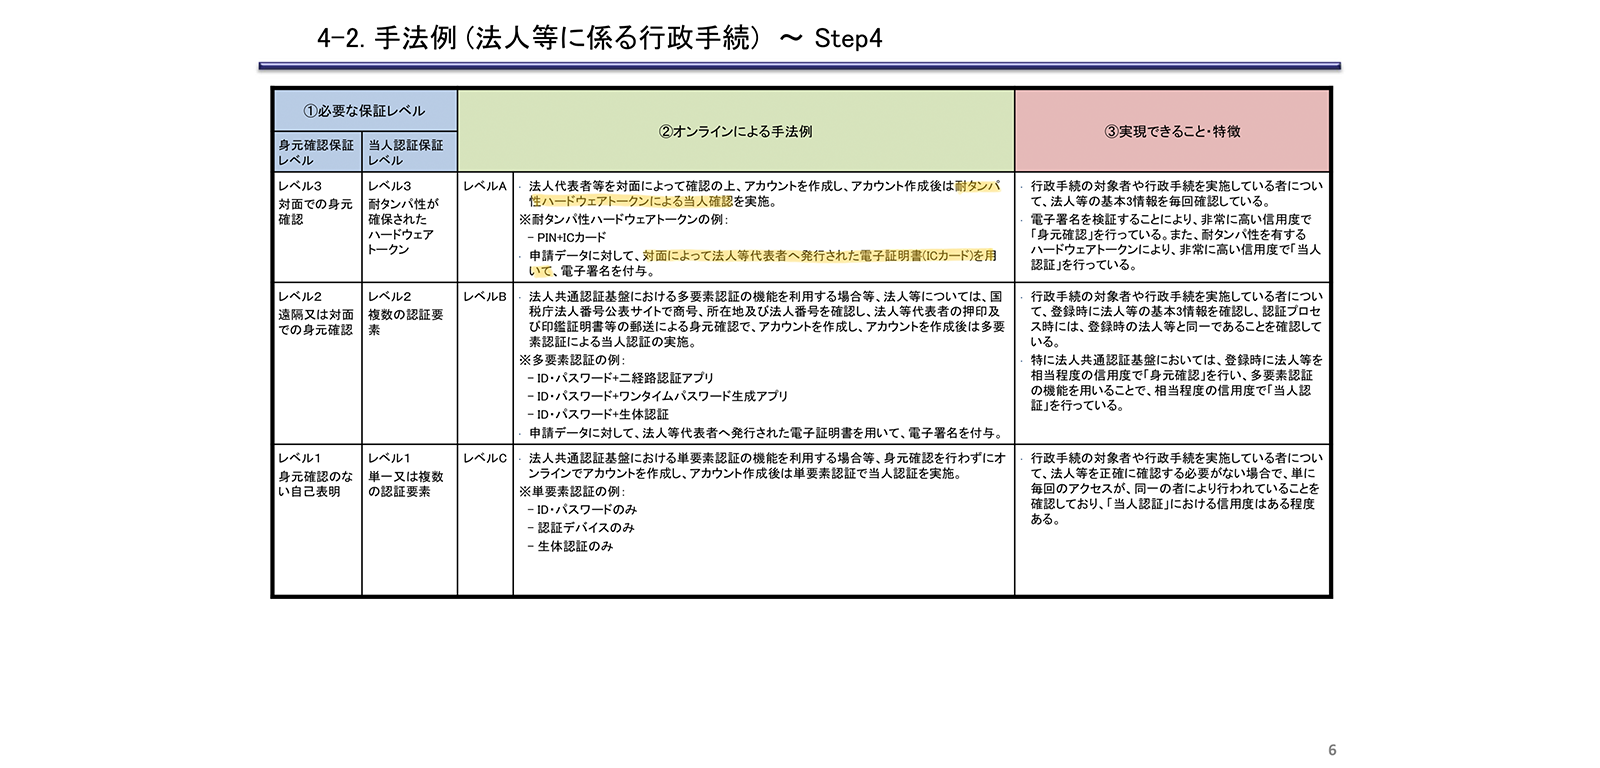 オンラインにおける行政手続の本人確認の手法に関するガイドラインについて https://www8.cao.go.jp/kisei-kaikaku/suishin/meeting/bukai/20190305/190305bukai04.pdf P6